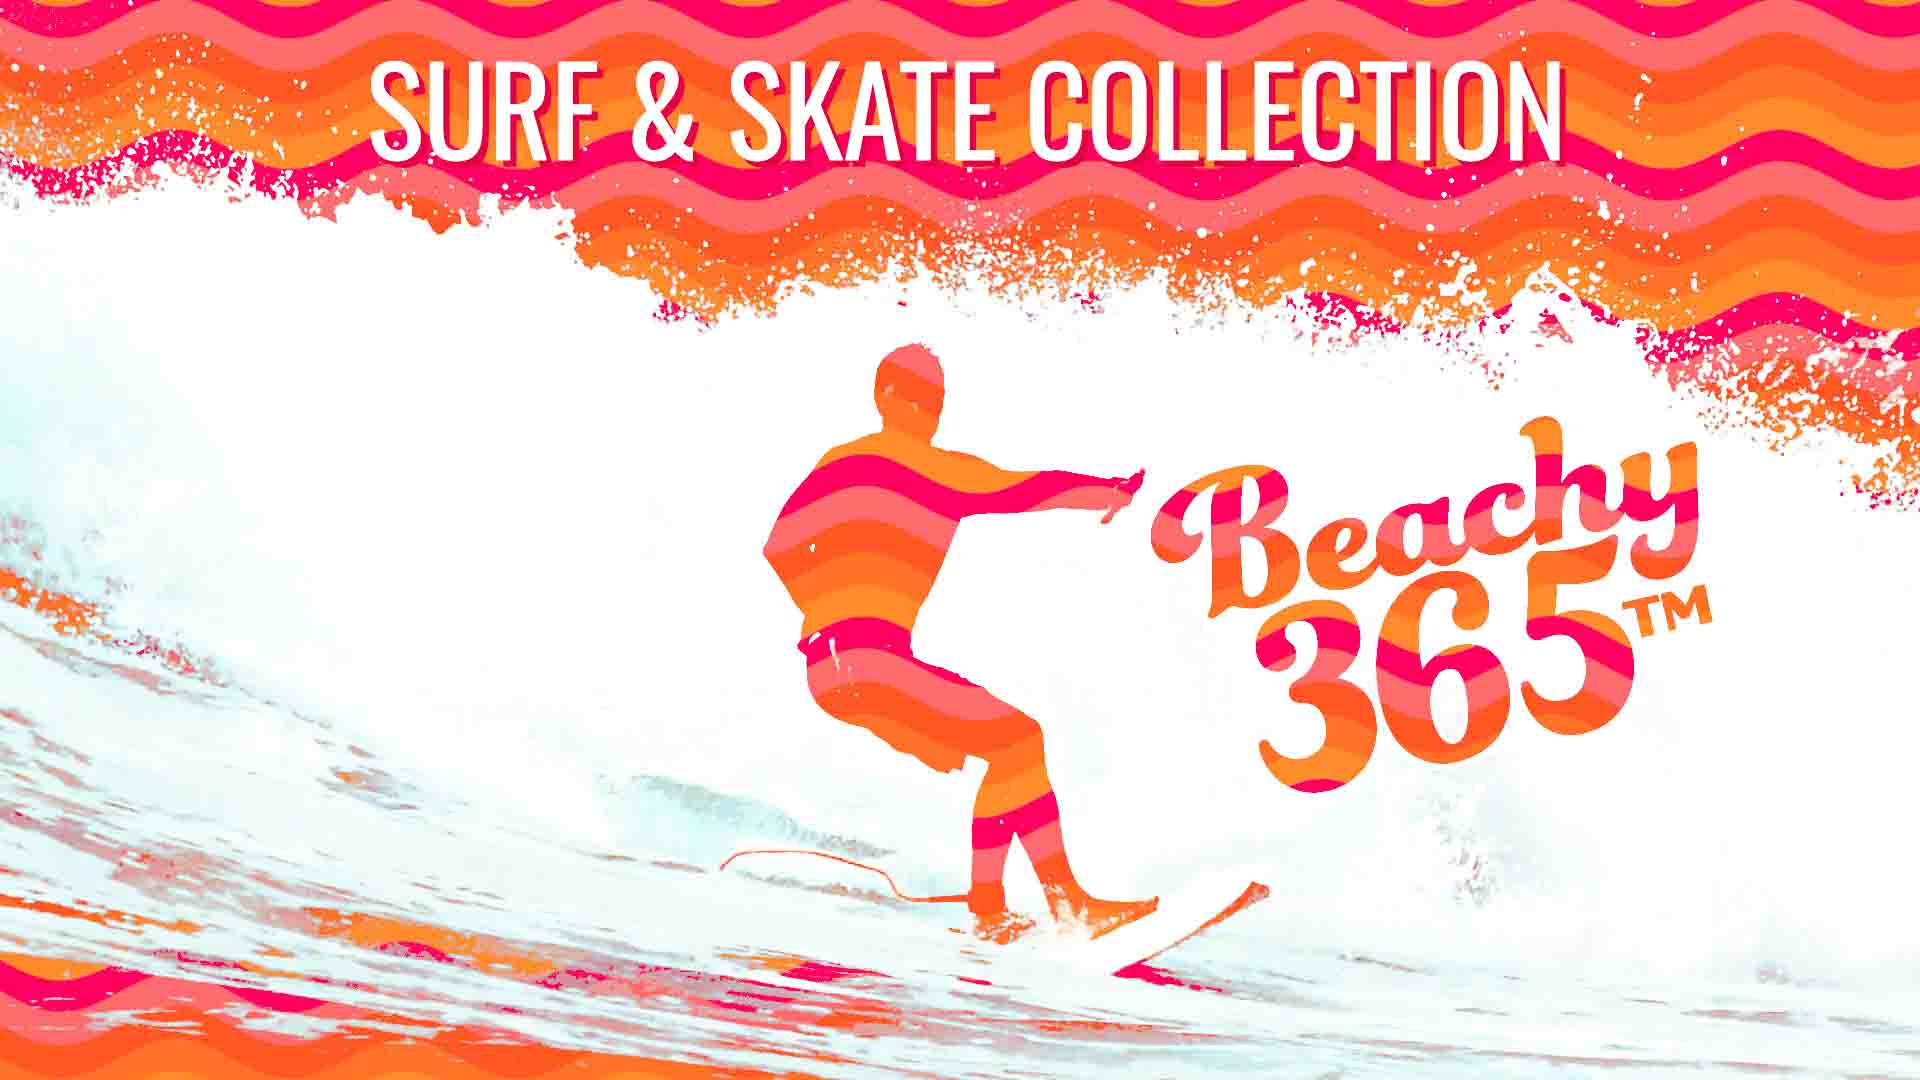 Surf & Skate Collection Surfer Image